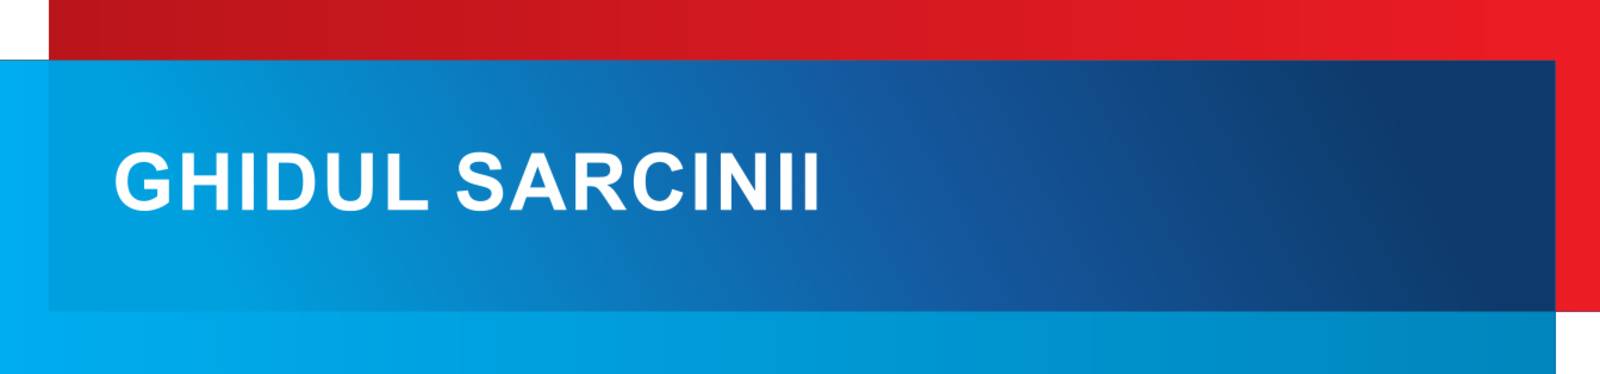 Grafisches Modul in den Farben Blau und Rot, dazu der Text: "GHIDUL SARCINII".